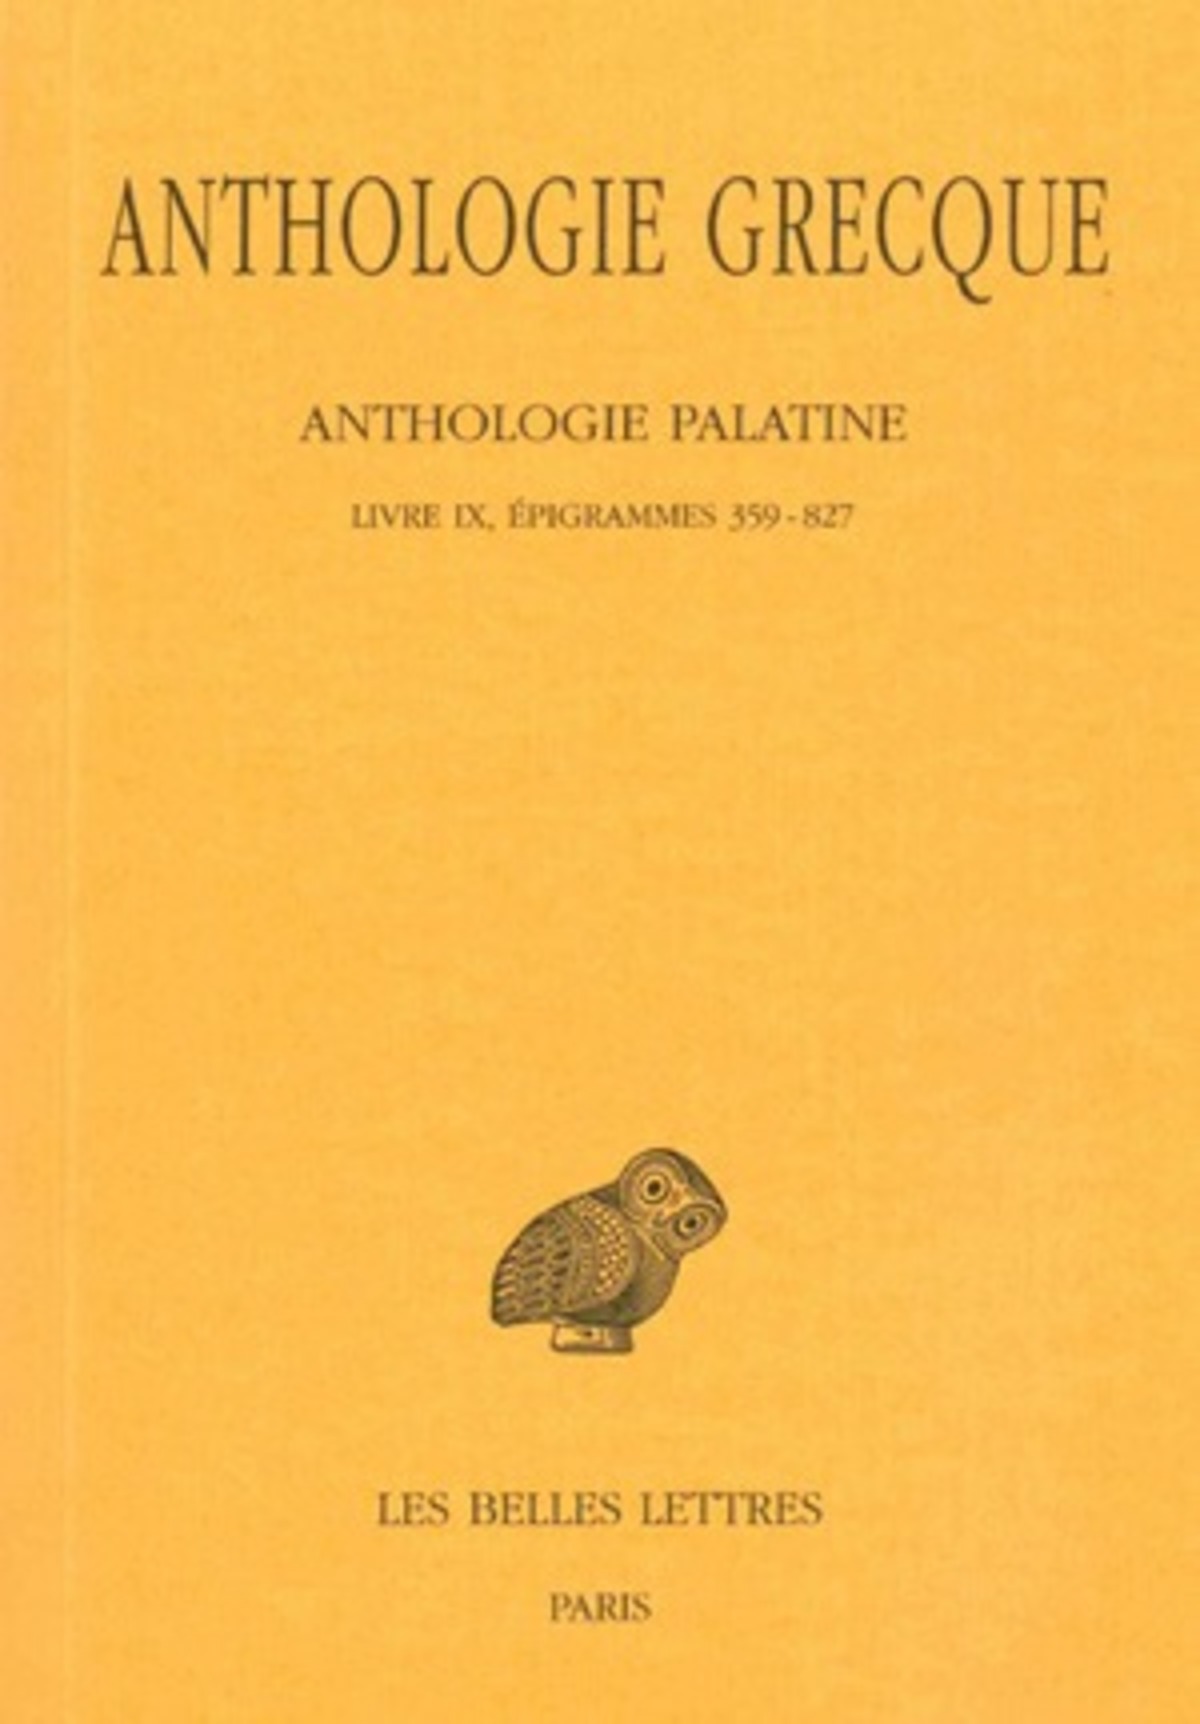 Anthologie grecque. Tome VIII: Anthologie palatine, Livre IX, Épigrammes 359-827